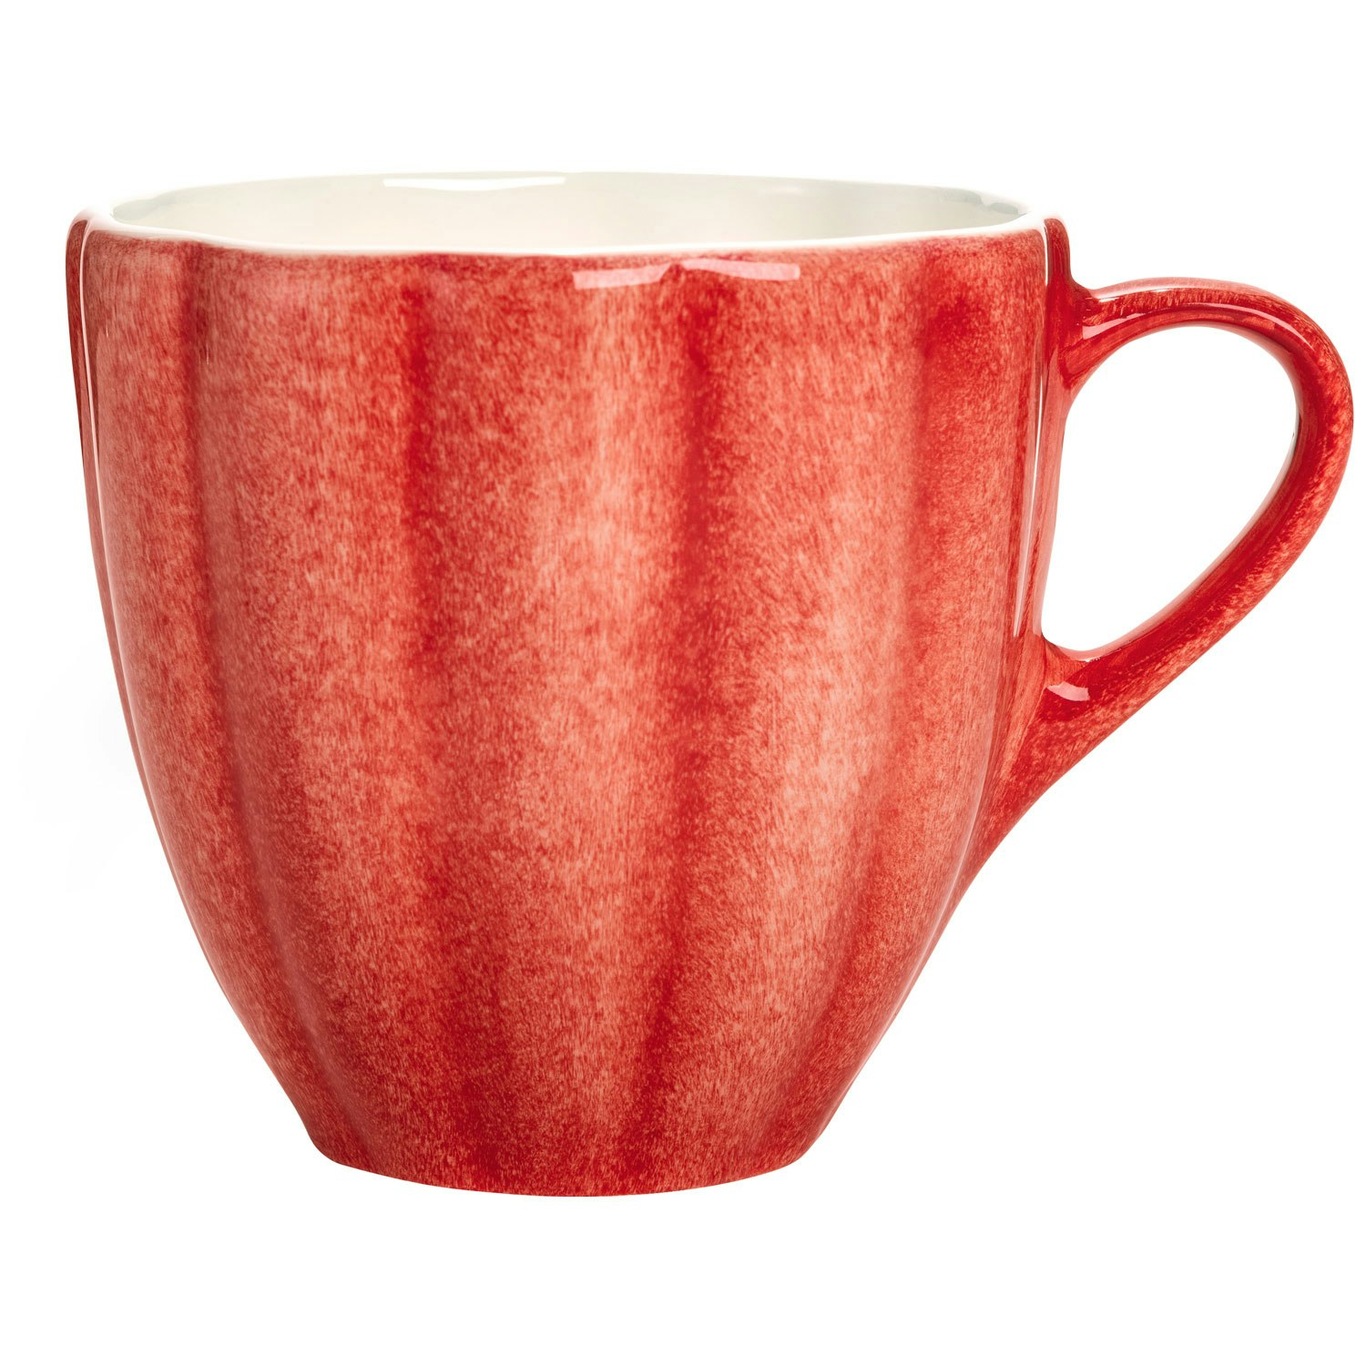 Oyster Mug 60 cl, Red